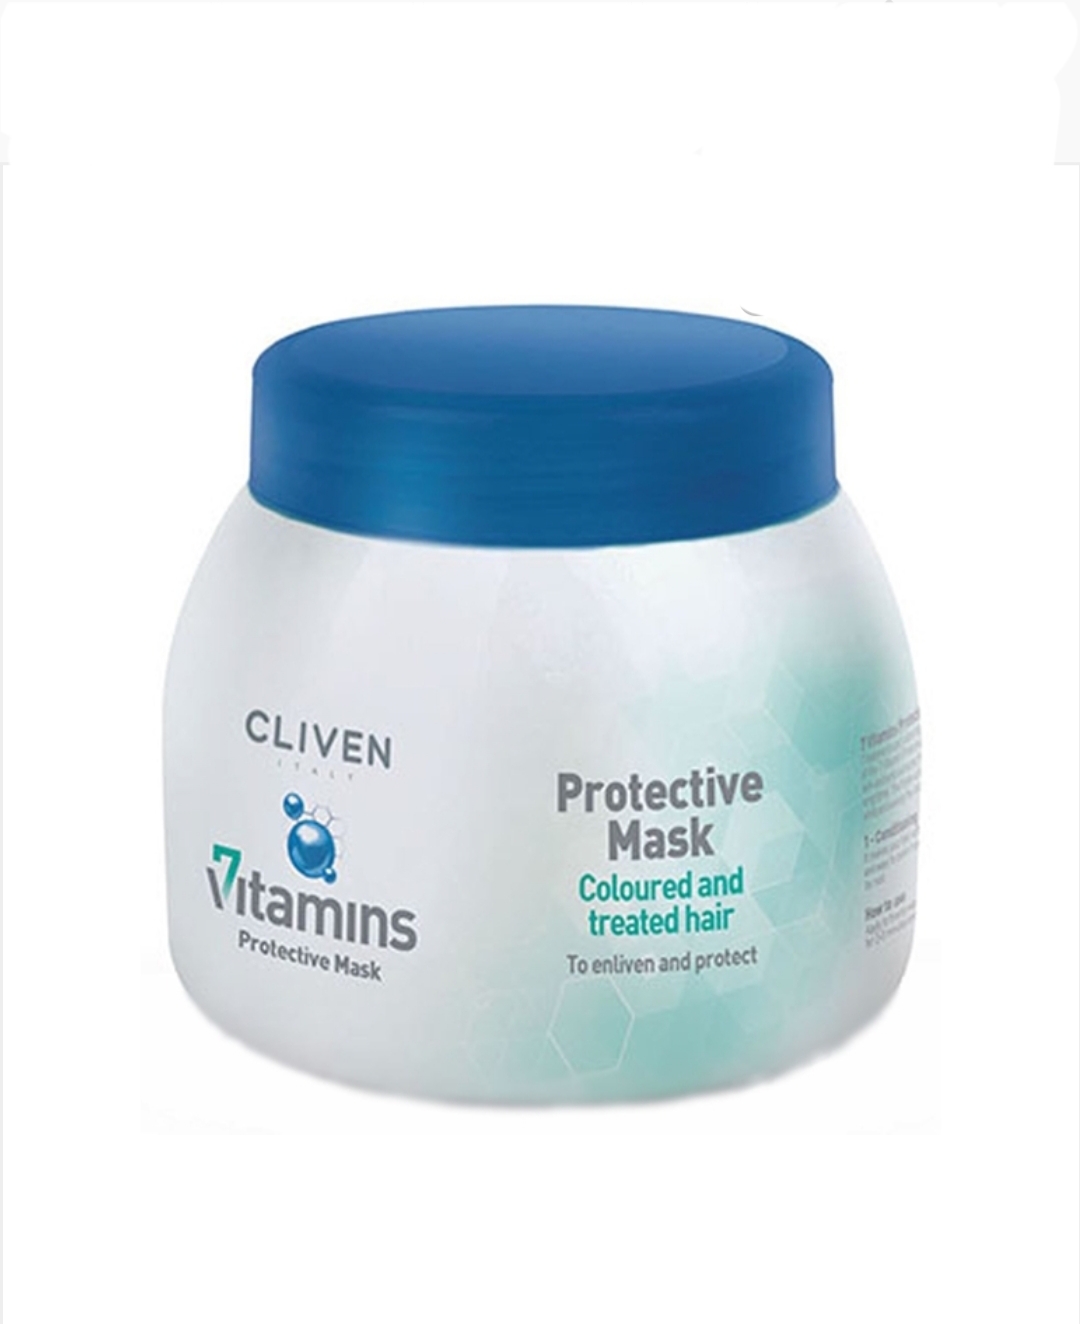 فراورده های حالت دهنده ،نرم کننده وتثبیت کننده آرایش مو (کرمها ، لوسیونها وروغنها) CLIVEN Cliven 7 vitamine protective mask coloures and treated hair 500ml